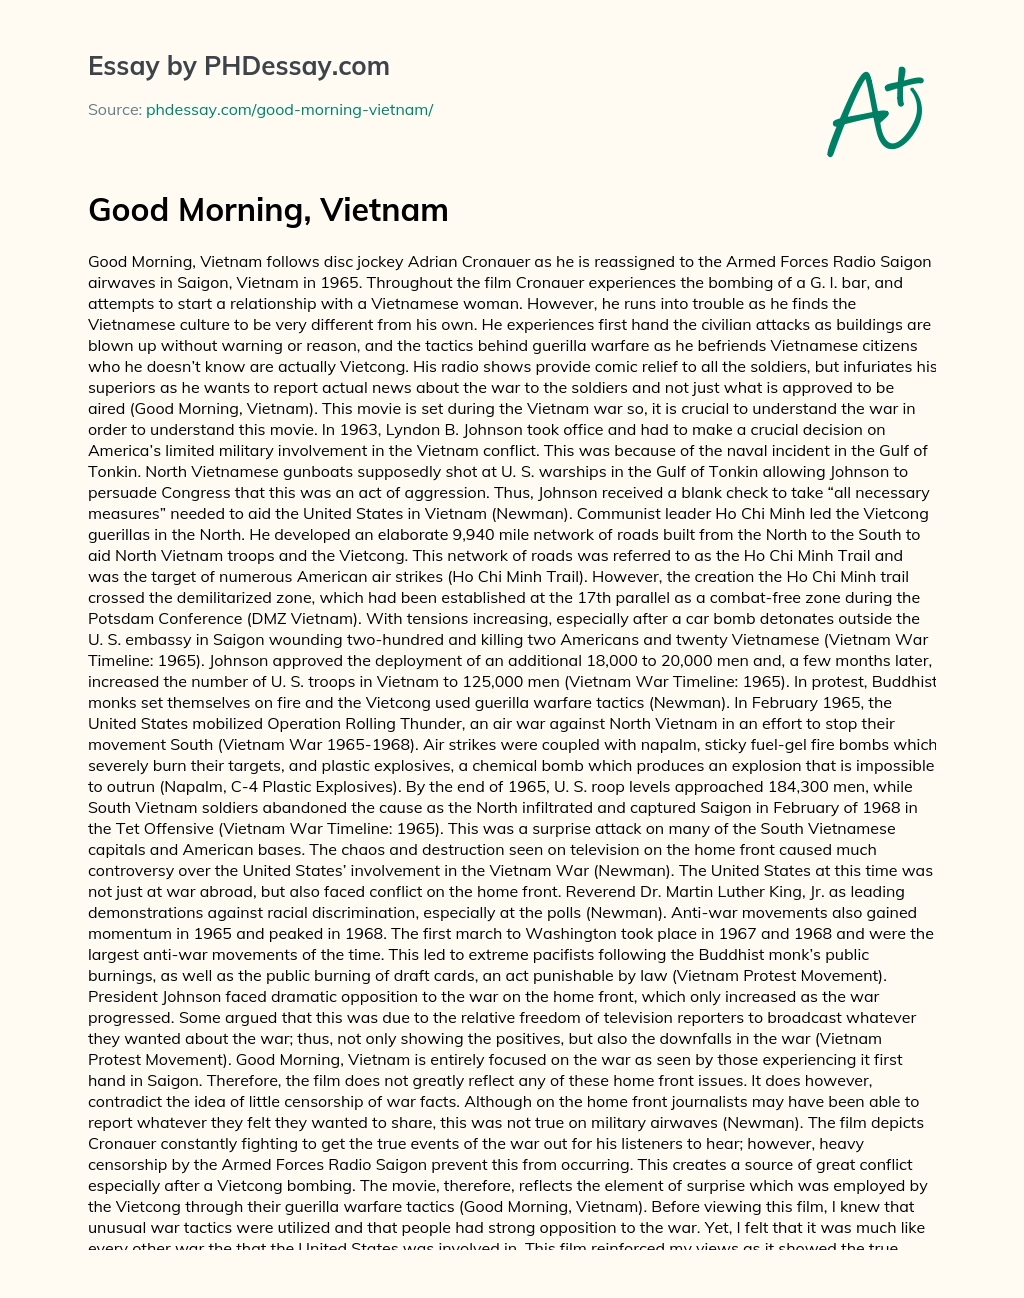 Good Morning, Vietnam essay